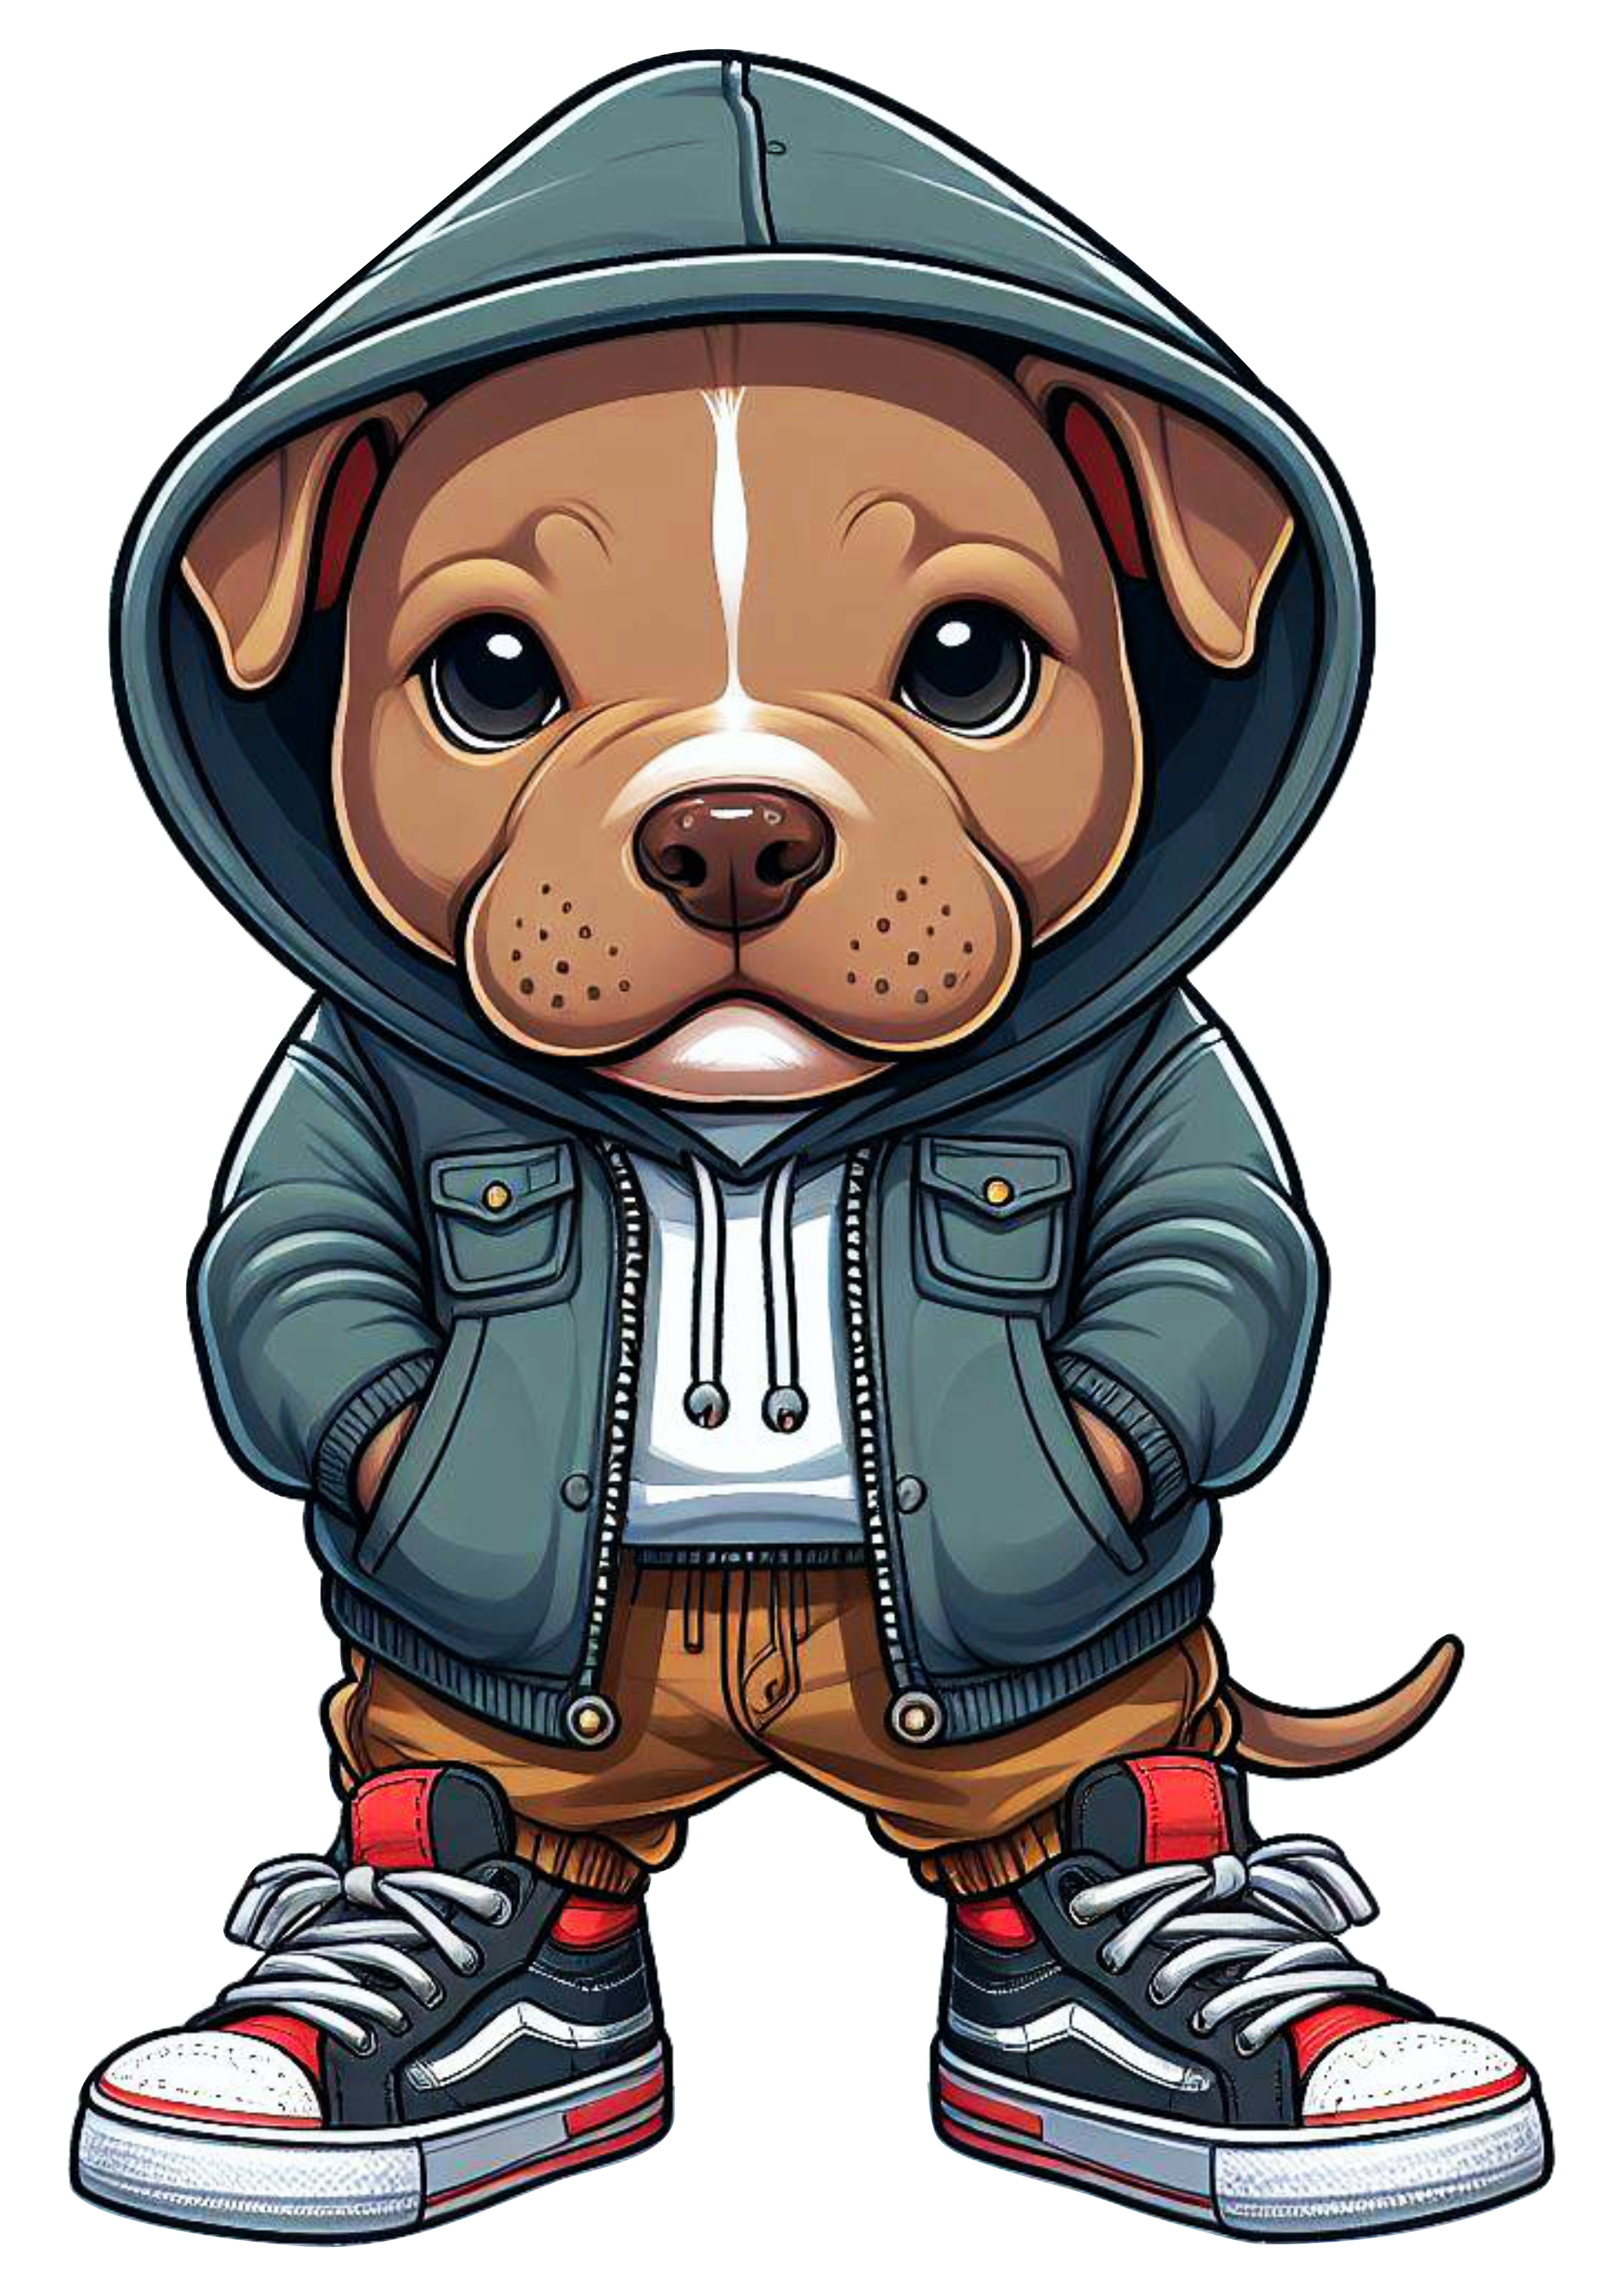 Pitbull cachorrinho de roupa de skatista desenho infantil blusão moletom png image ilustração artes gráficas